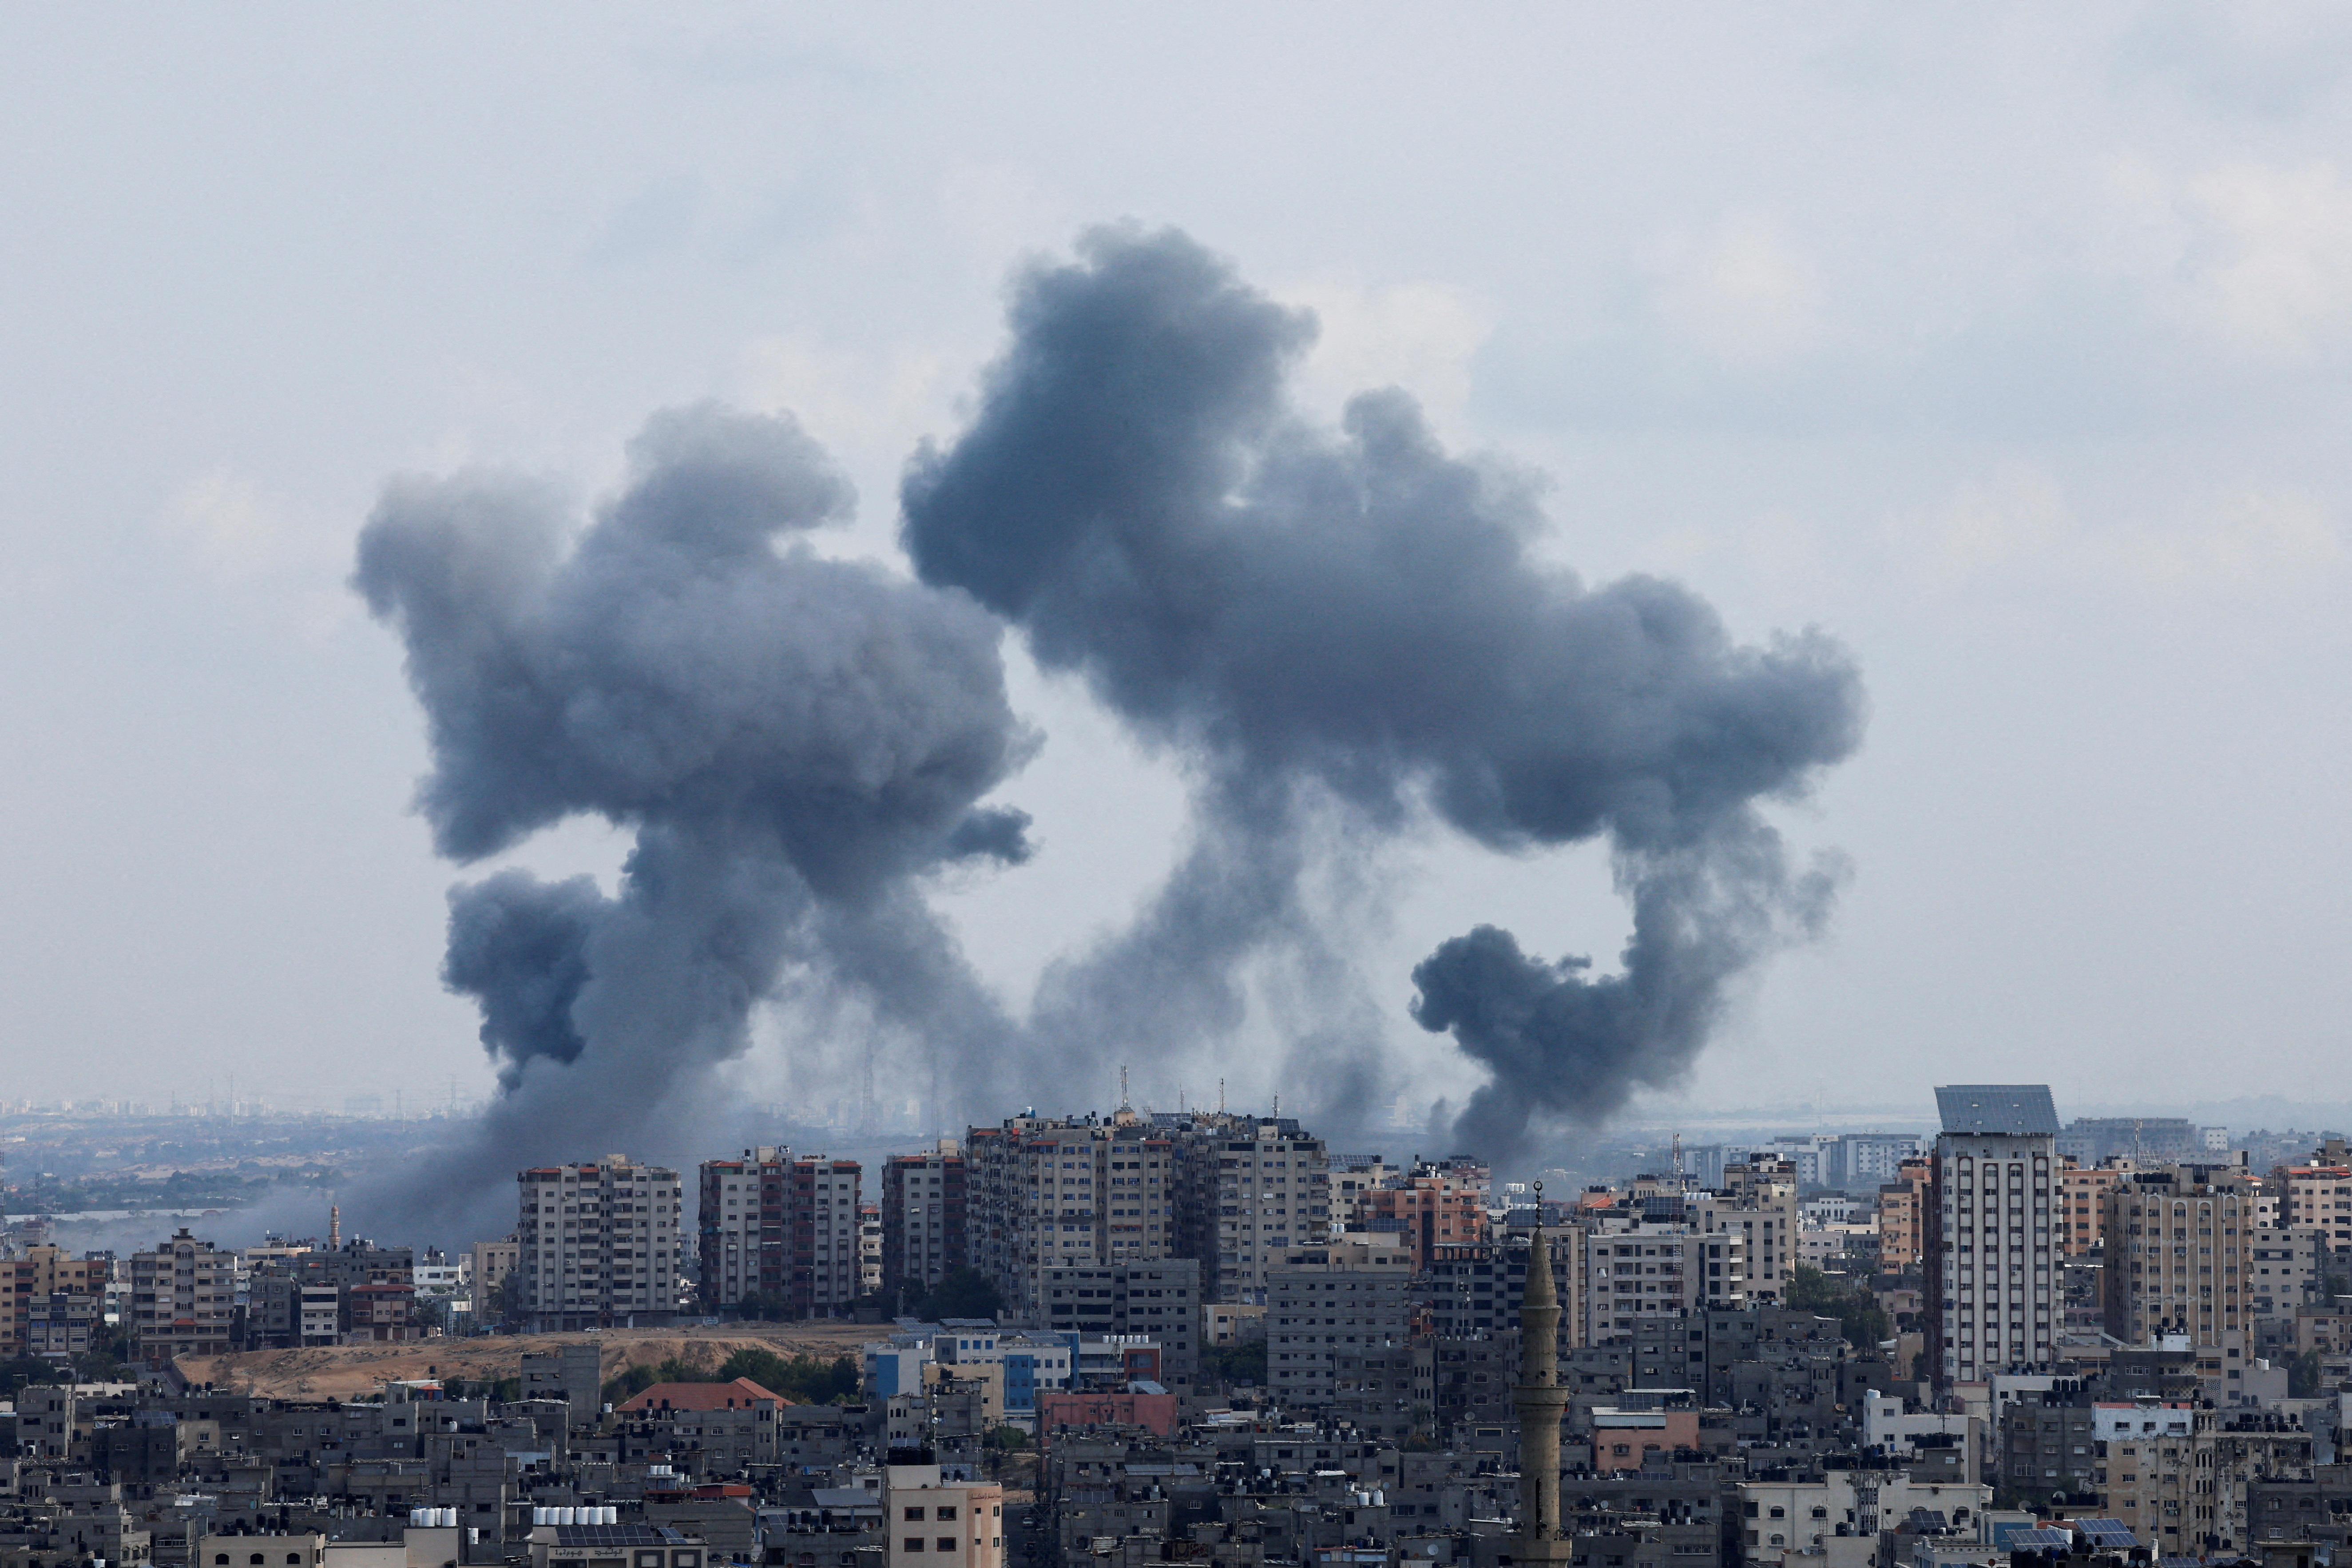 Aftermath of Israeli strikes